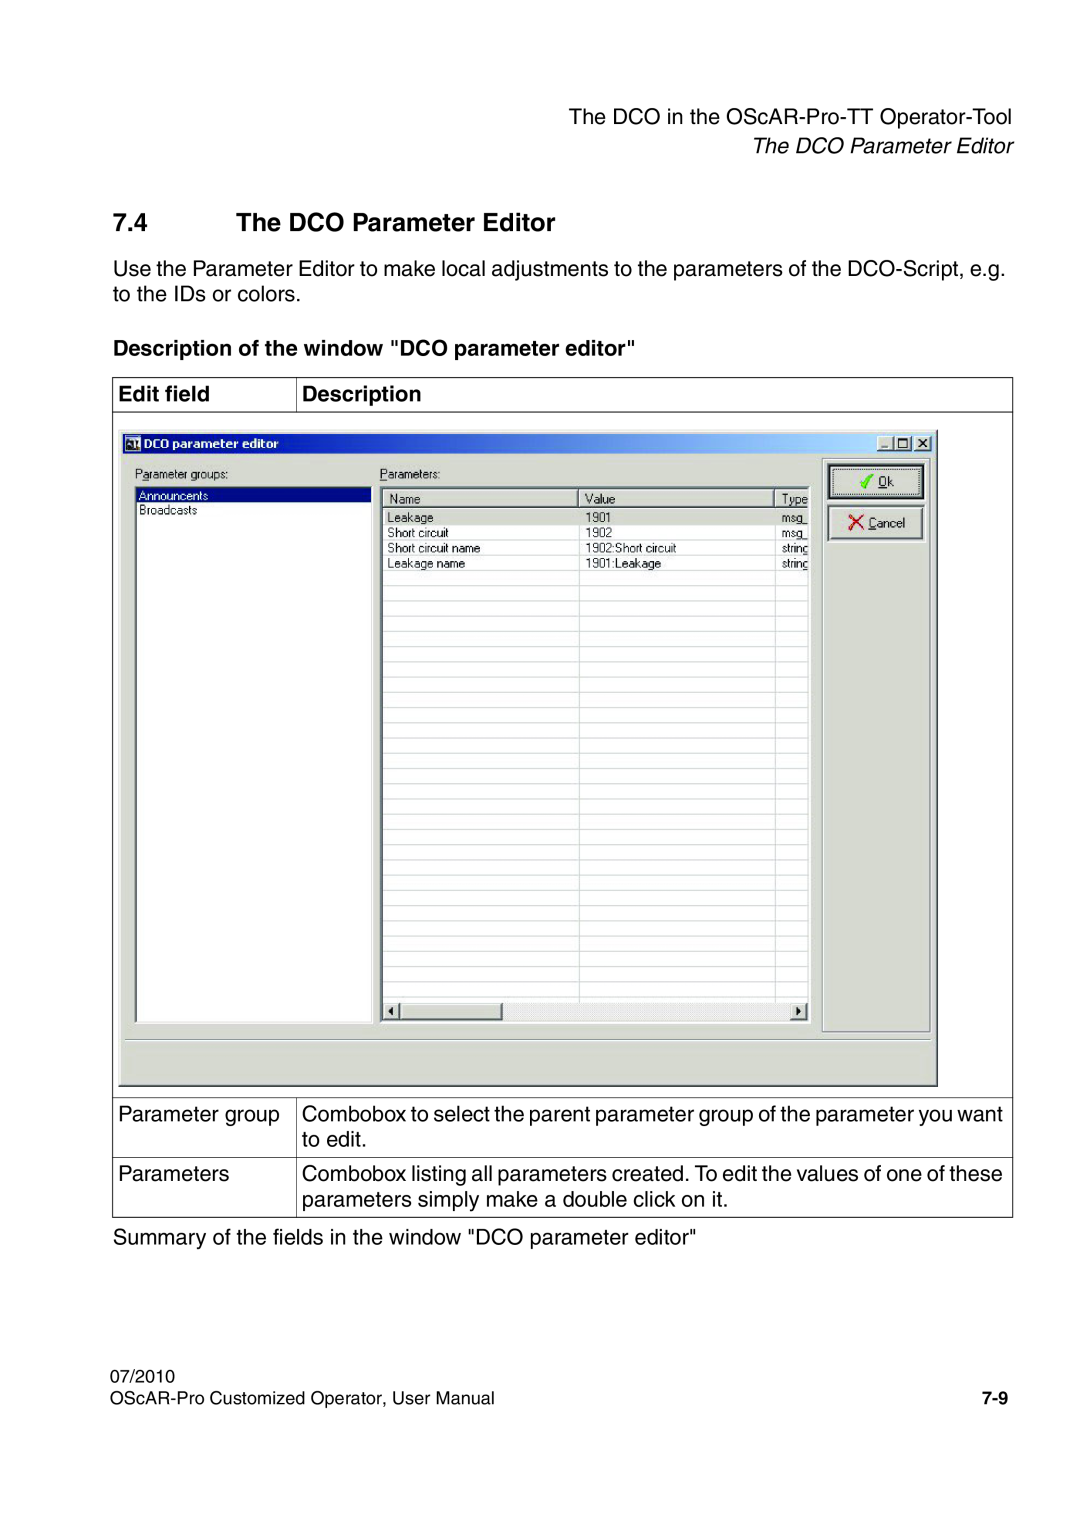 Siemens A31003-51730-U103-7619 7.4The DCO Parameter Editor, Description of the window DCO parameter editor, Edit field 